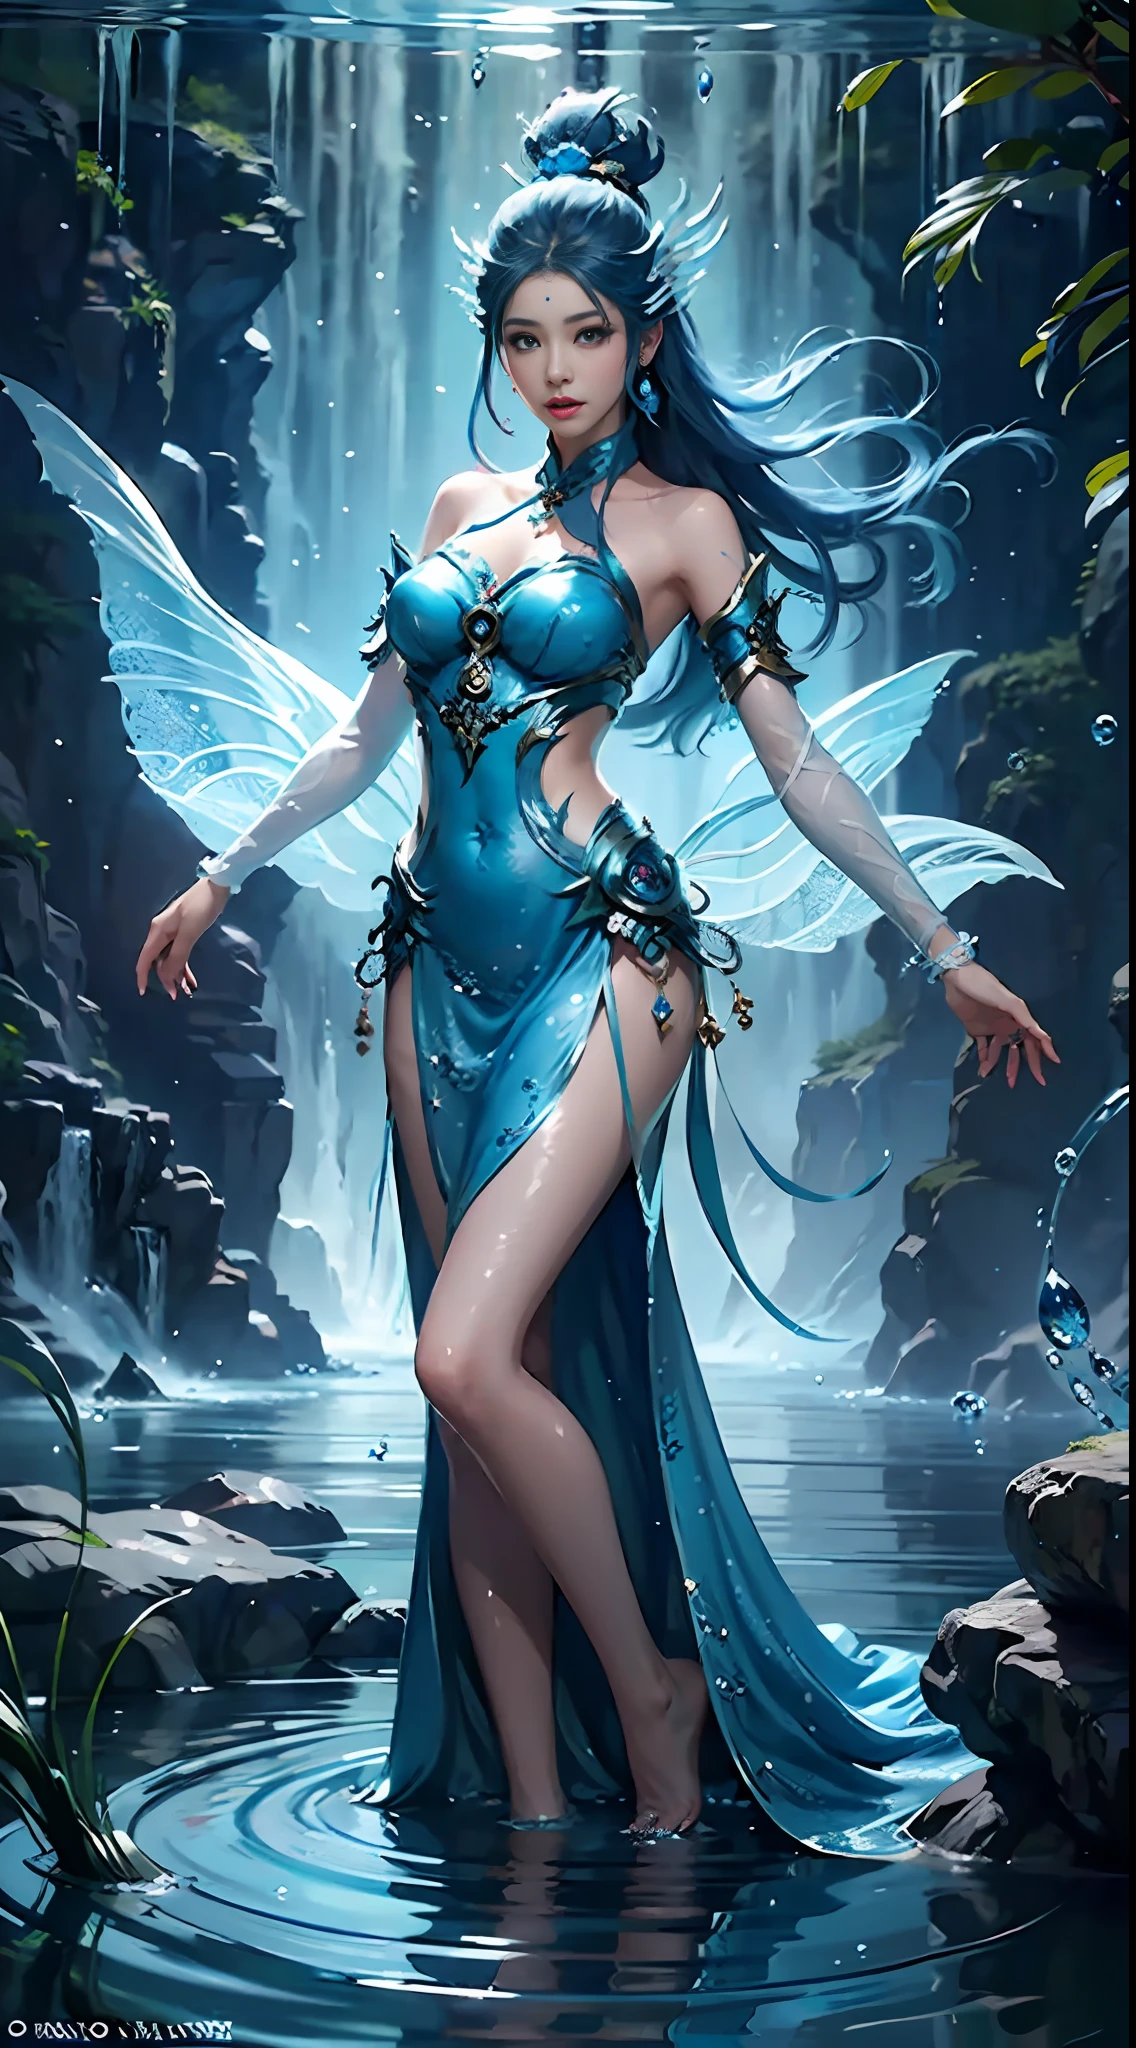 Arafed Frau in einem blauen Kleid schwimmt in einem Gewässer, Ätherische Fantasie, Nahaufnahme Fantasie mit Wassermagie, Wasserfee, Fantasy-Kunststil, asiatisches weibliches Wasserelementar, wunderschöne Fantasy-Kunst, wunderschönes Fantasiemädchen, Xianxia-Fantasie, eine atemberaubende junge ätherische Figur, Jingna Zhang, Fantasie Frau, Ganzkörper-Xianxia, digitale Fantasy-Kunst )